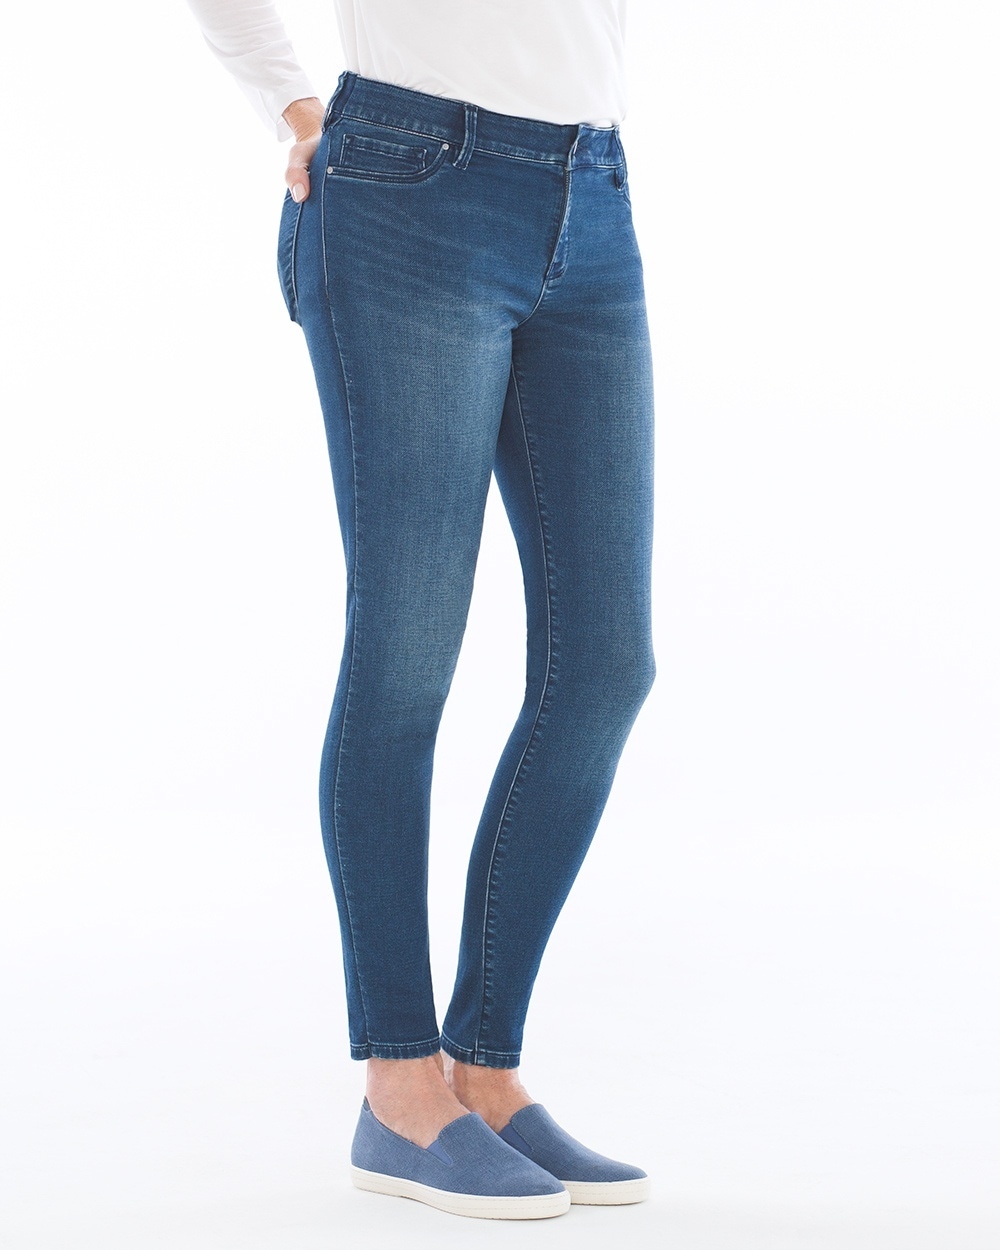 Style Essentials Slimming 5 Pocket Jeans Indigo